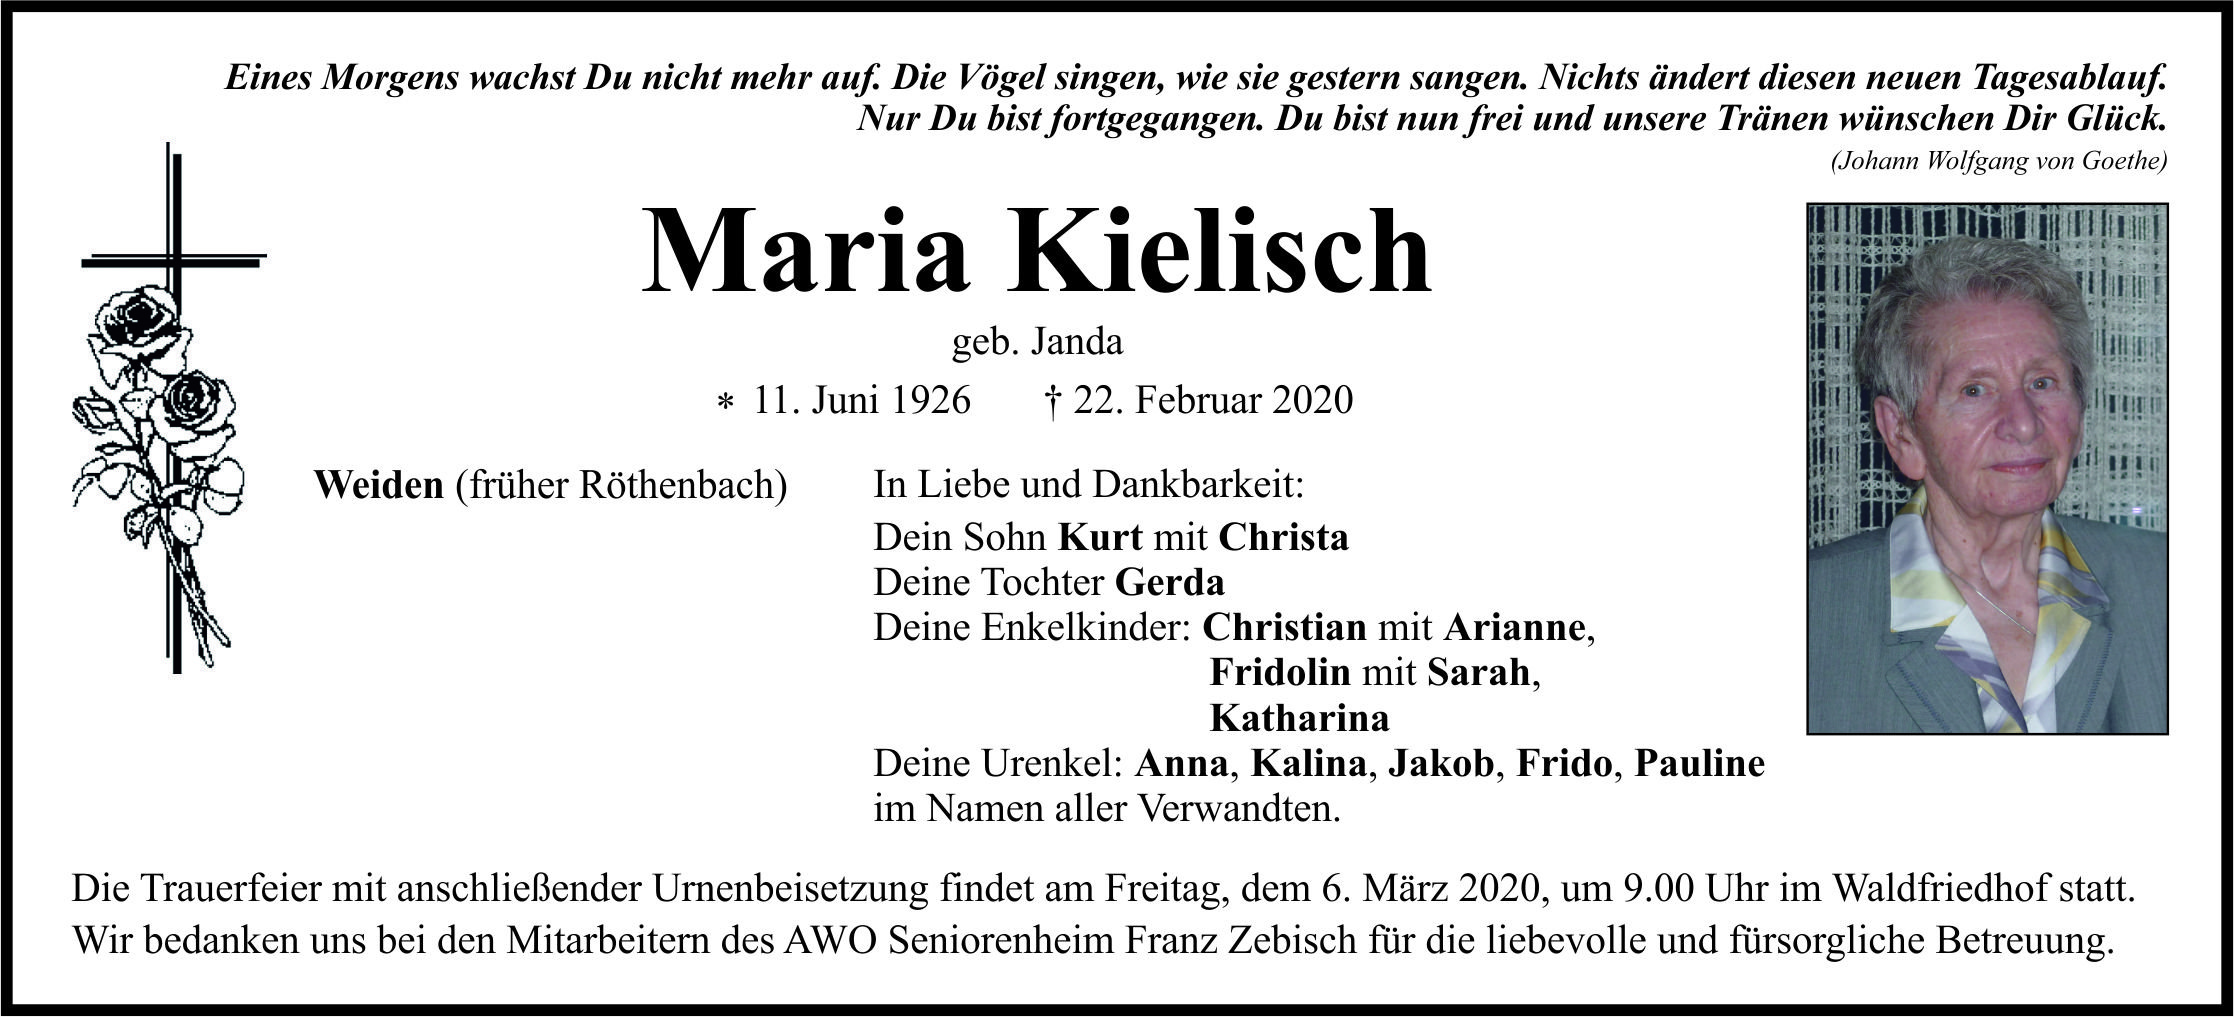 Traueranzeige Maria Kielisch, Weiden